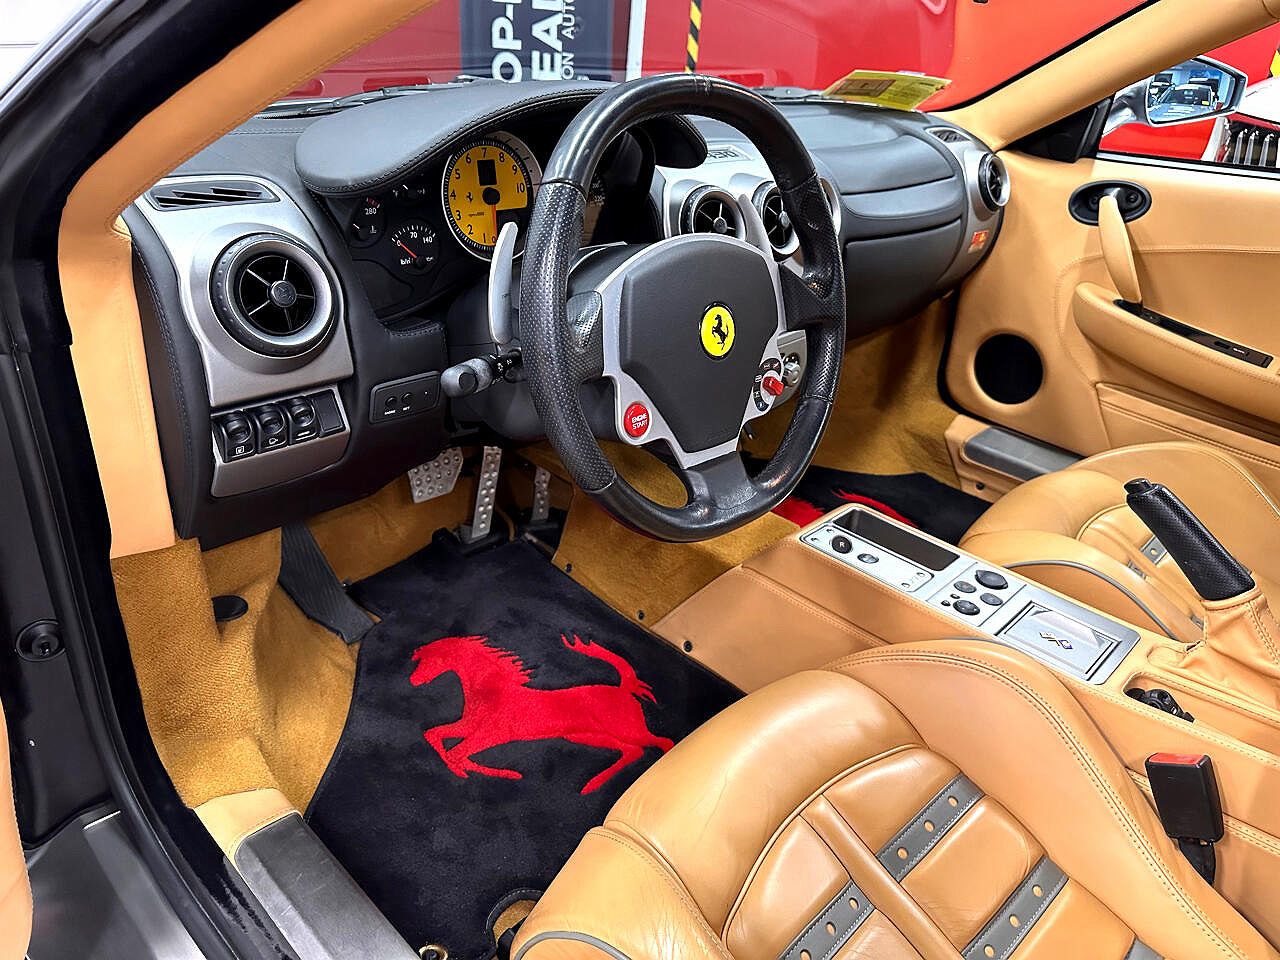 2007 Ferrari F430 Spider image 21